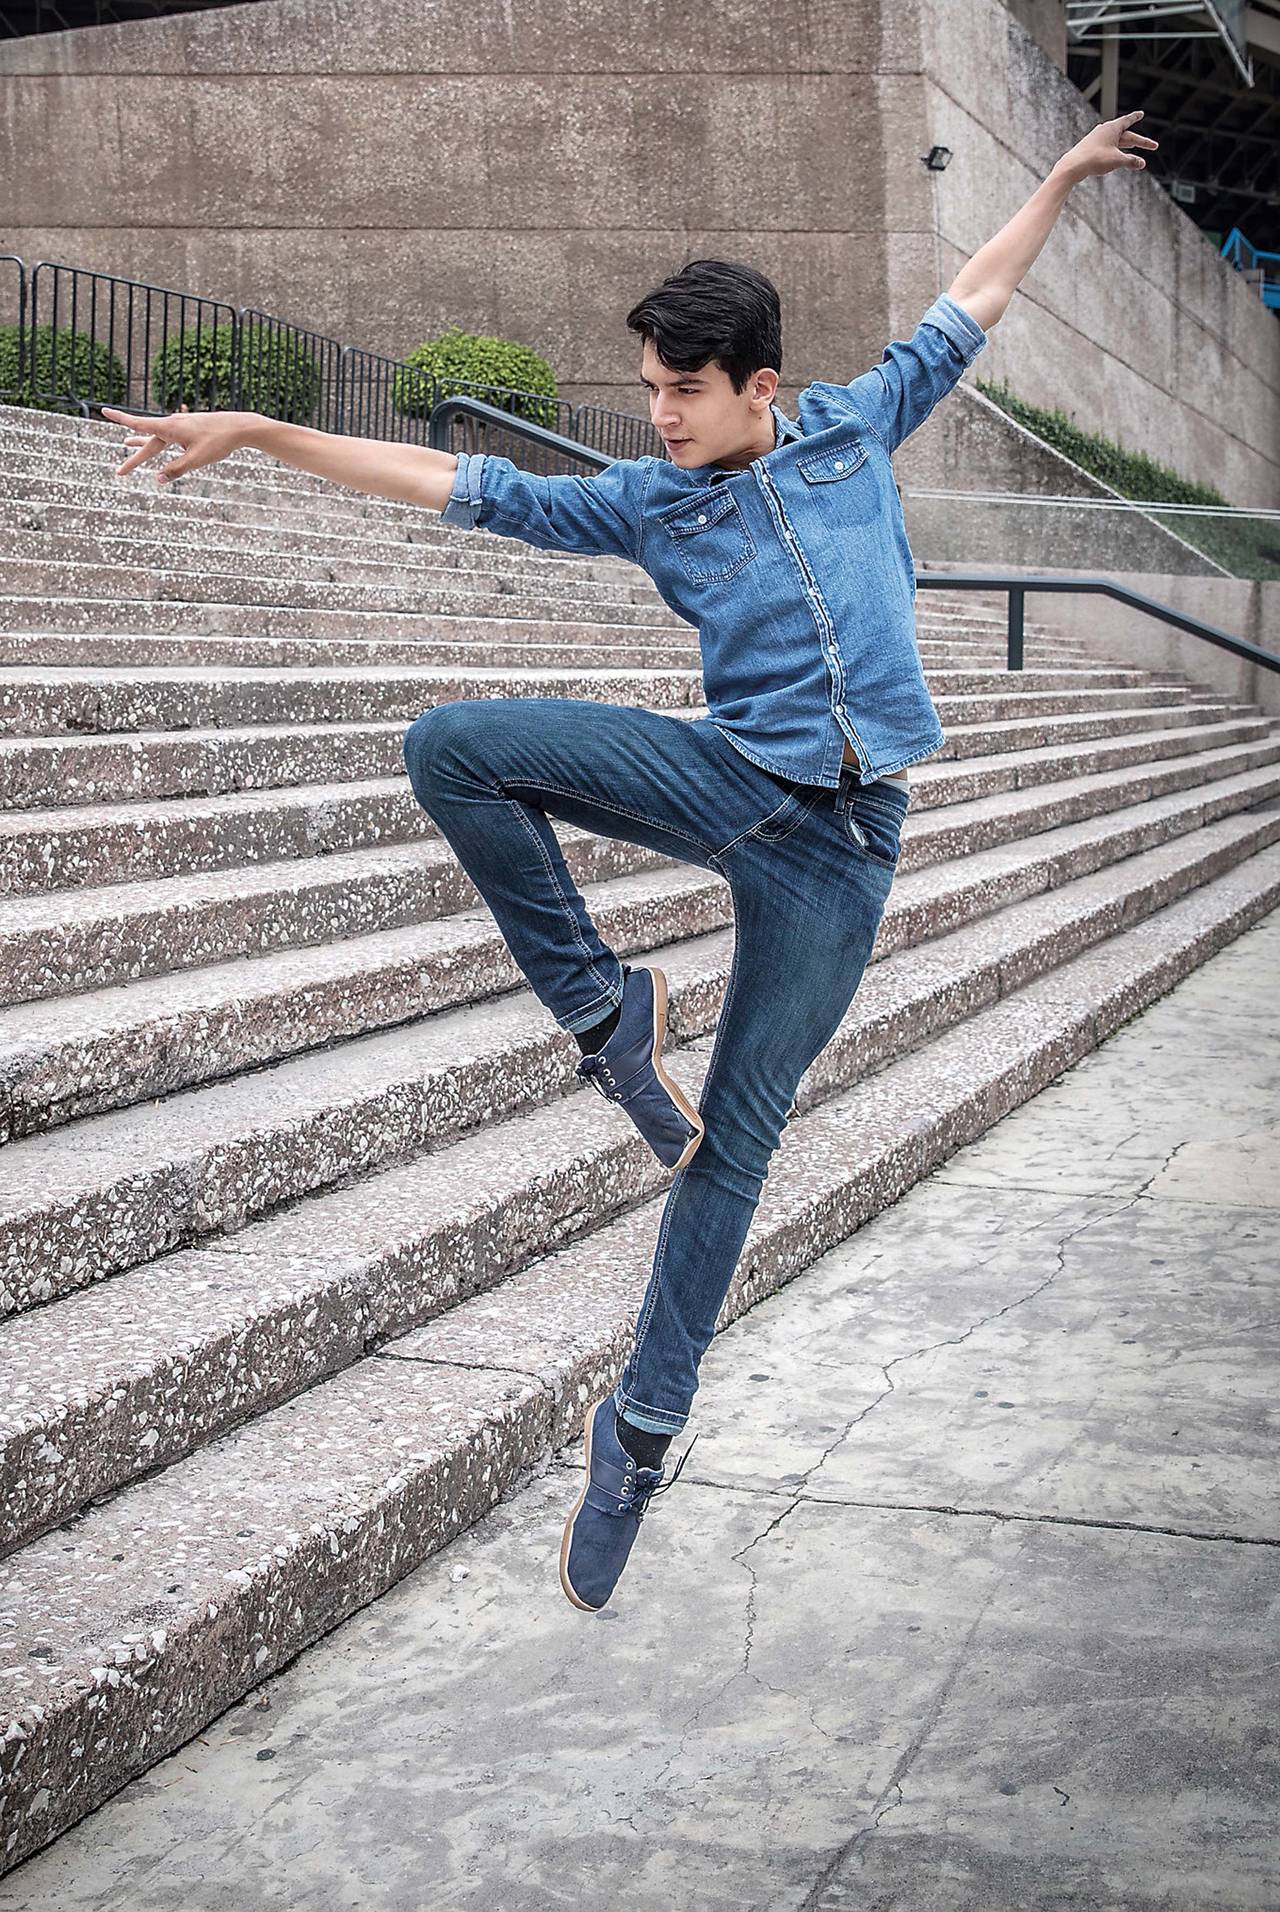 Trabajando. El bailarín mexicano Enrique Bejarano, de 15 años, recauda fondos para pagar su estancia en la Academia de Danza Princesse Grace, en Montecarlo, en donde obtuvo una beca. (CORTESÍA)